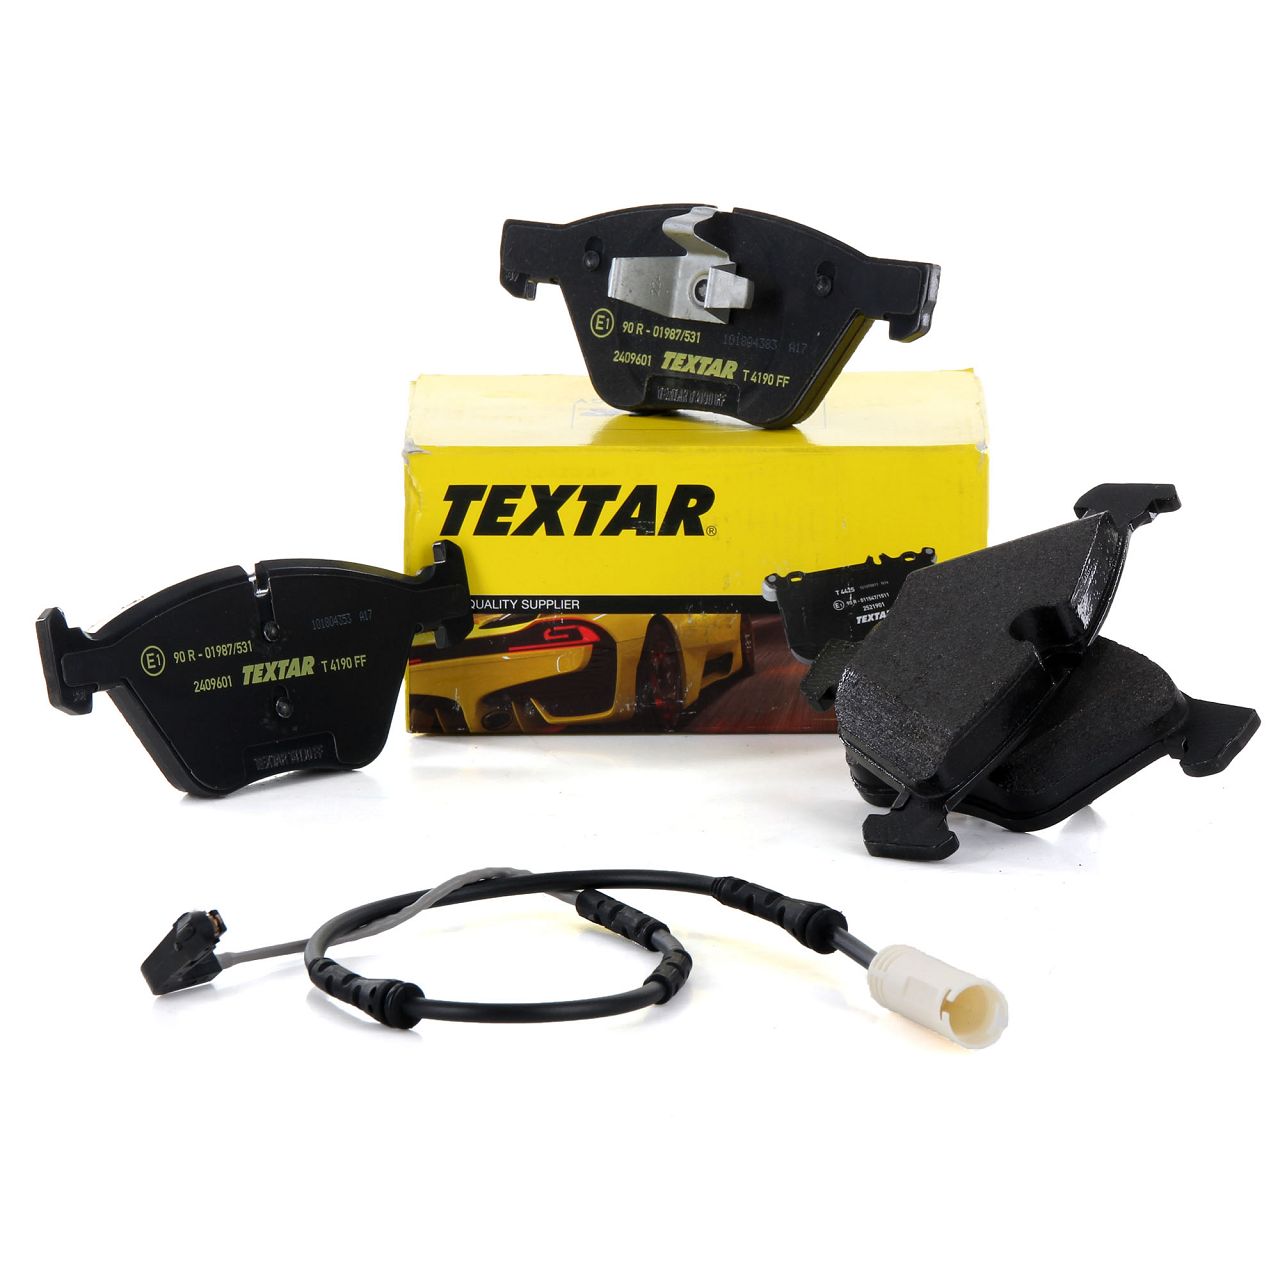 TEXTAR 2409601 Bremsbeläge + Sensor BMW 1er E81-88 120i 130i 123d 3er E90 318-330i vorne